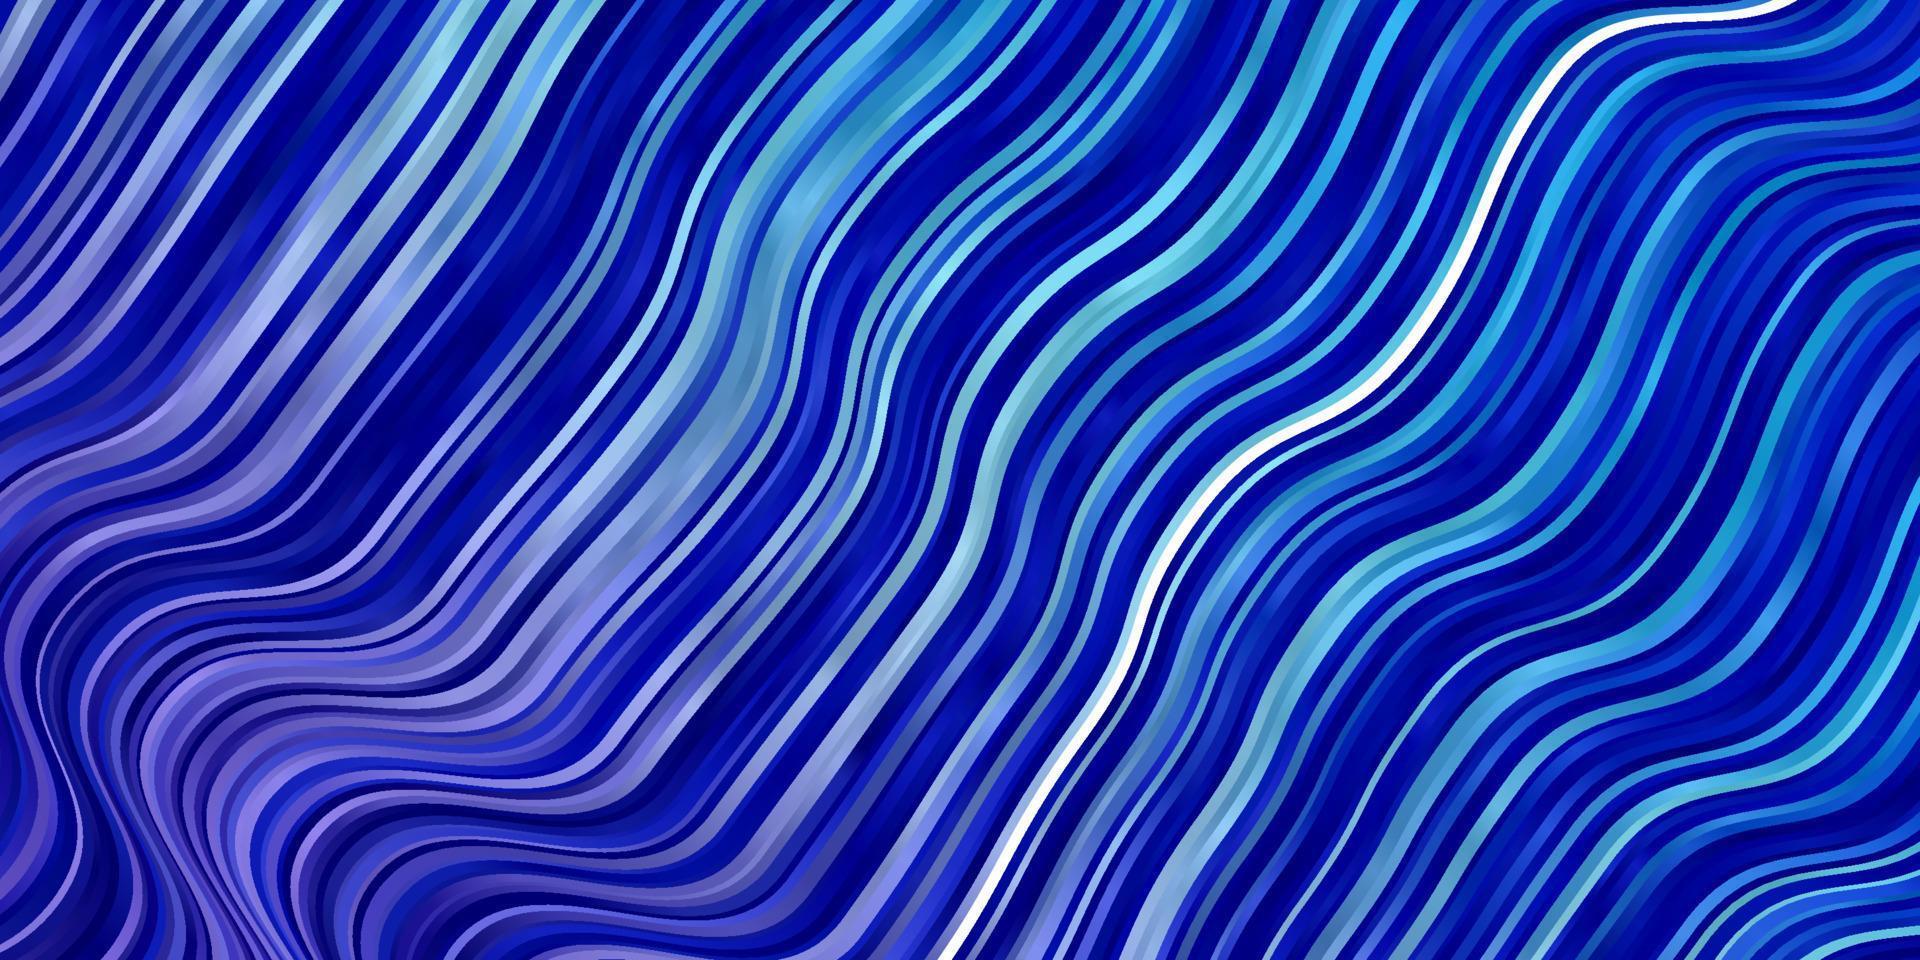 ljusrosa, blå vektormall med sneda linjer. vektor